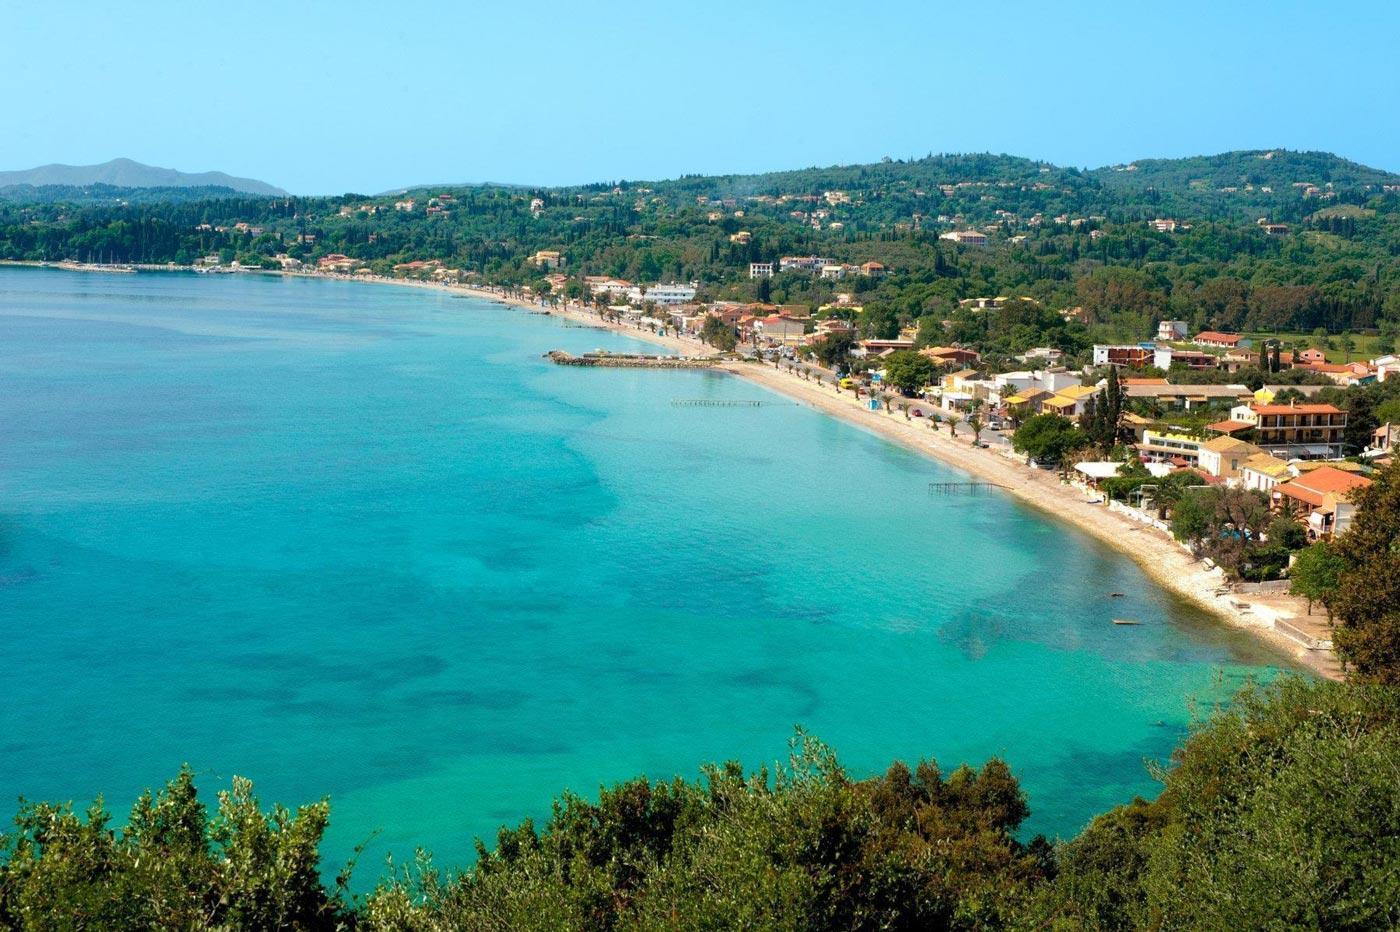 Corfu - Ipsos - Beach Aerial View